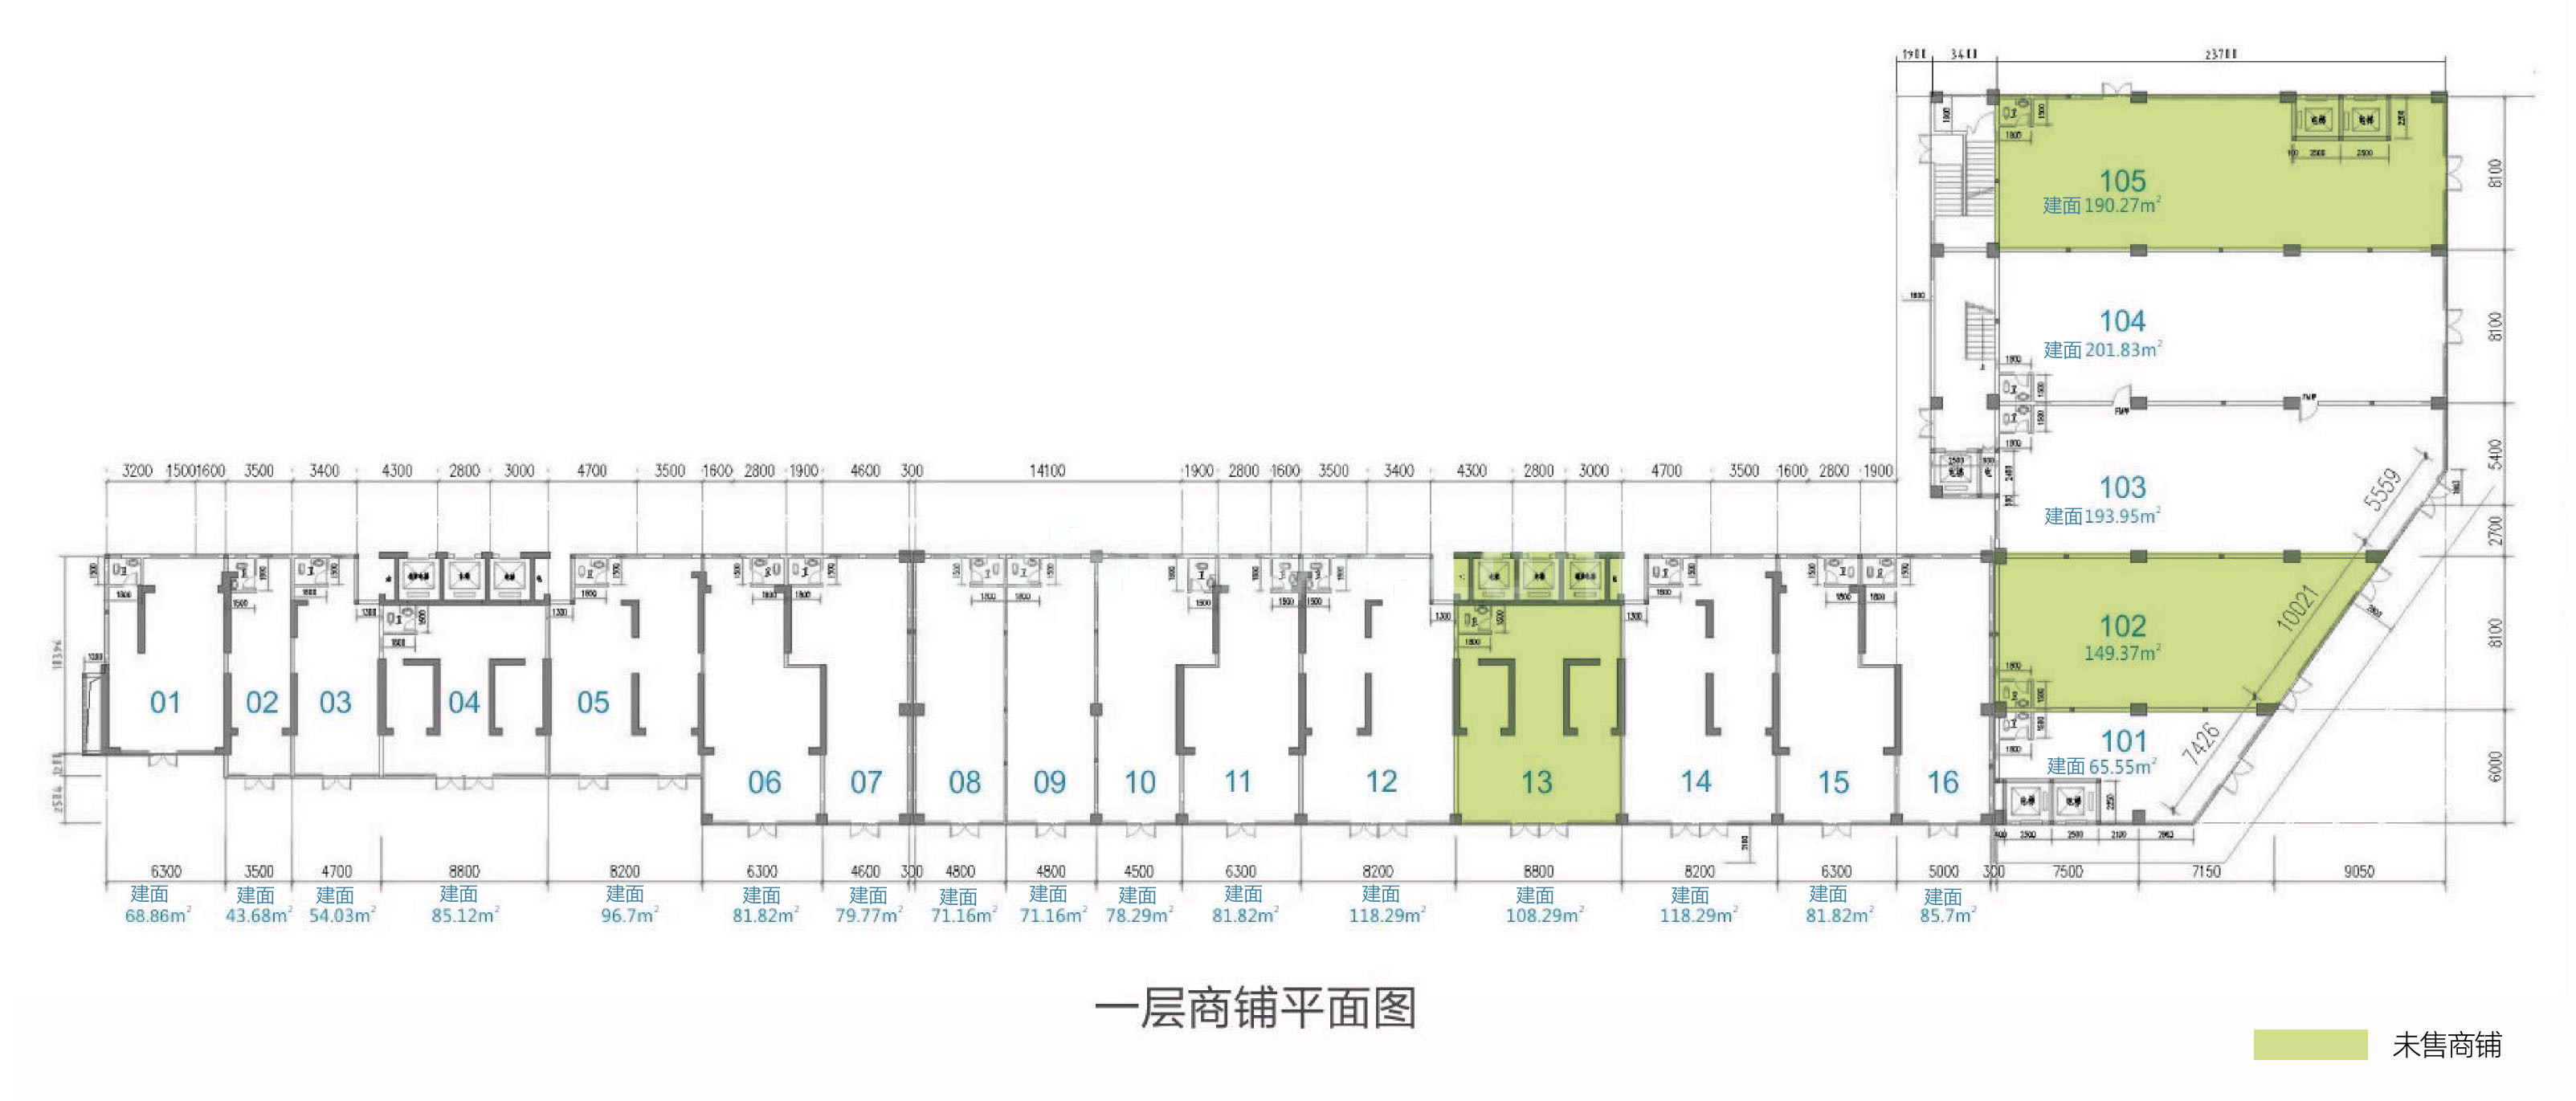 龙昆悦城 独立商业 一层平面图 1-16为底商